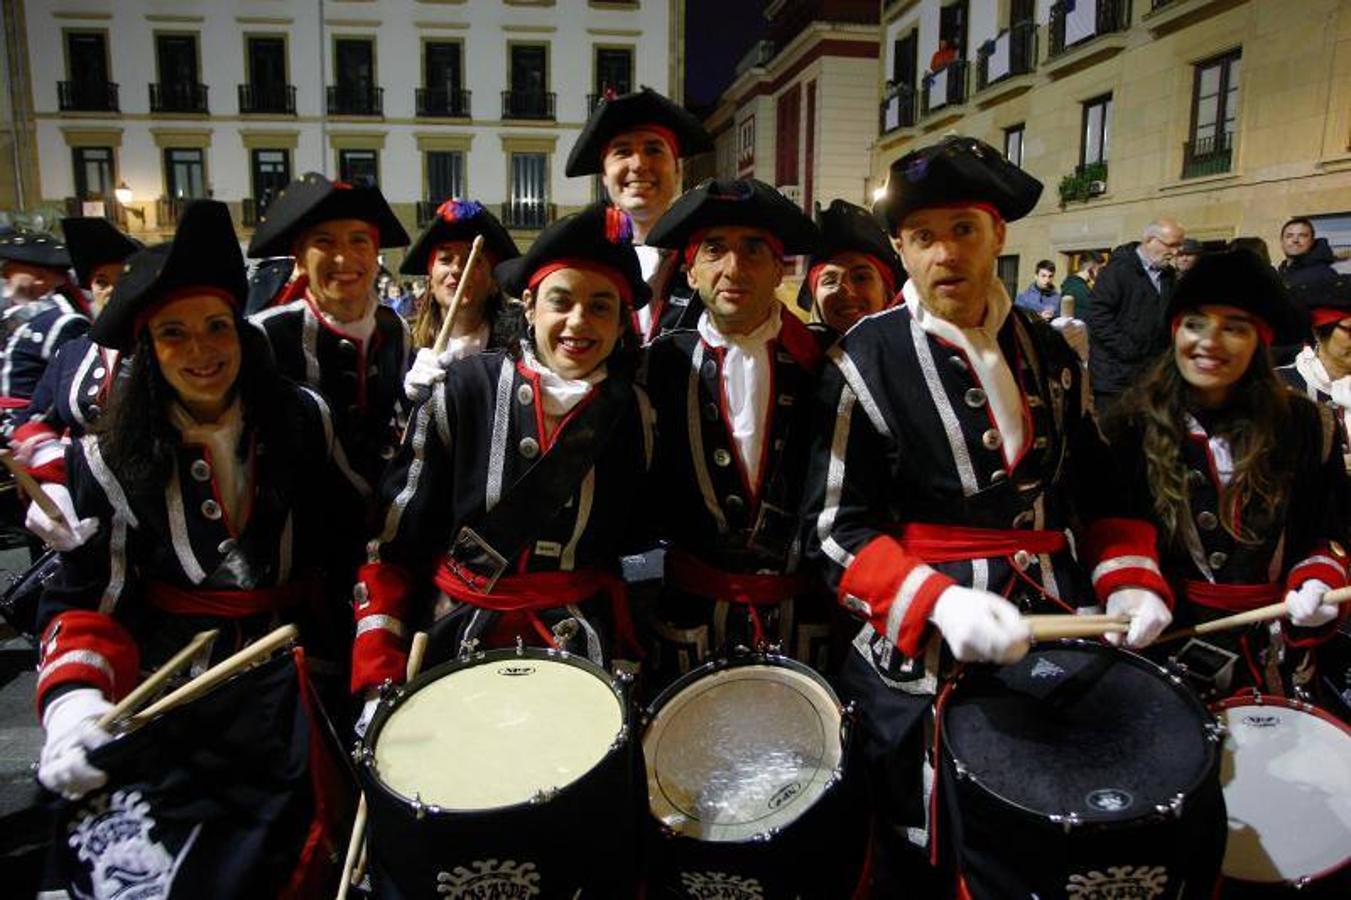 La Tamborrada Kaialde ha disfrutado del día de San Sebastián. La tamborrada de Kaialde surge en el año 2006 unida a la Sociedad Kaialde de Fermín Calbetón. Se trata de una tamborrada mixta con cerca de 200 componentes entre tambores, barriles, aguadores y abanderadas